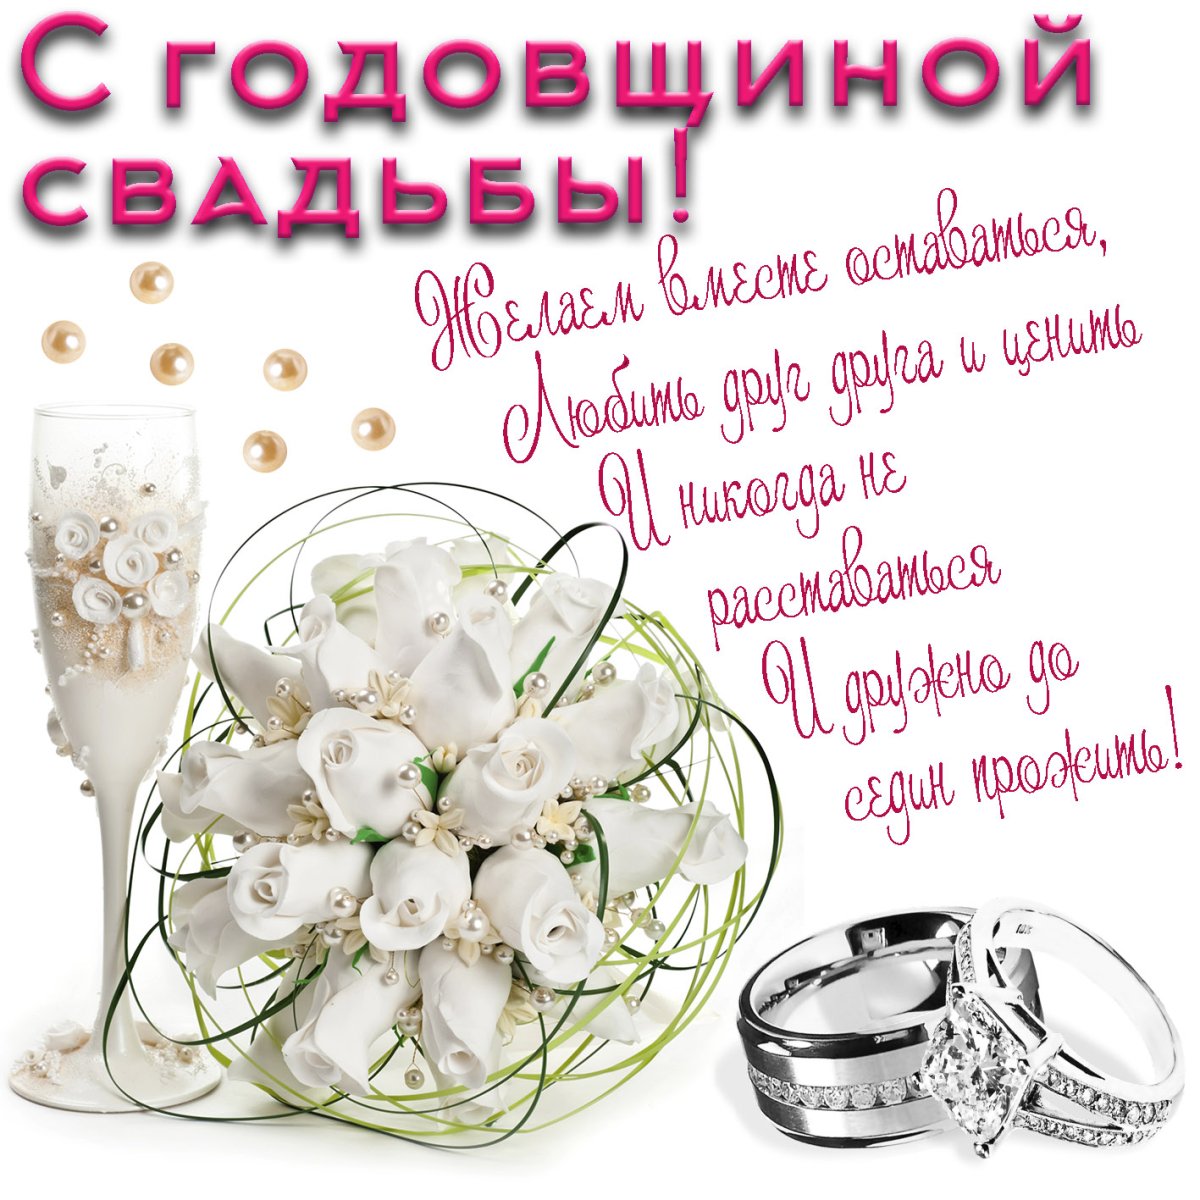 Открытки с днем свадьбы - скачать бесплатно на prachka-mira.ru